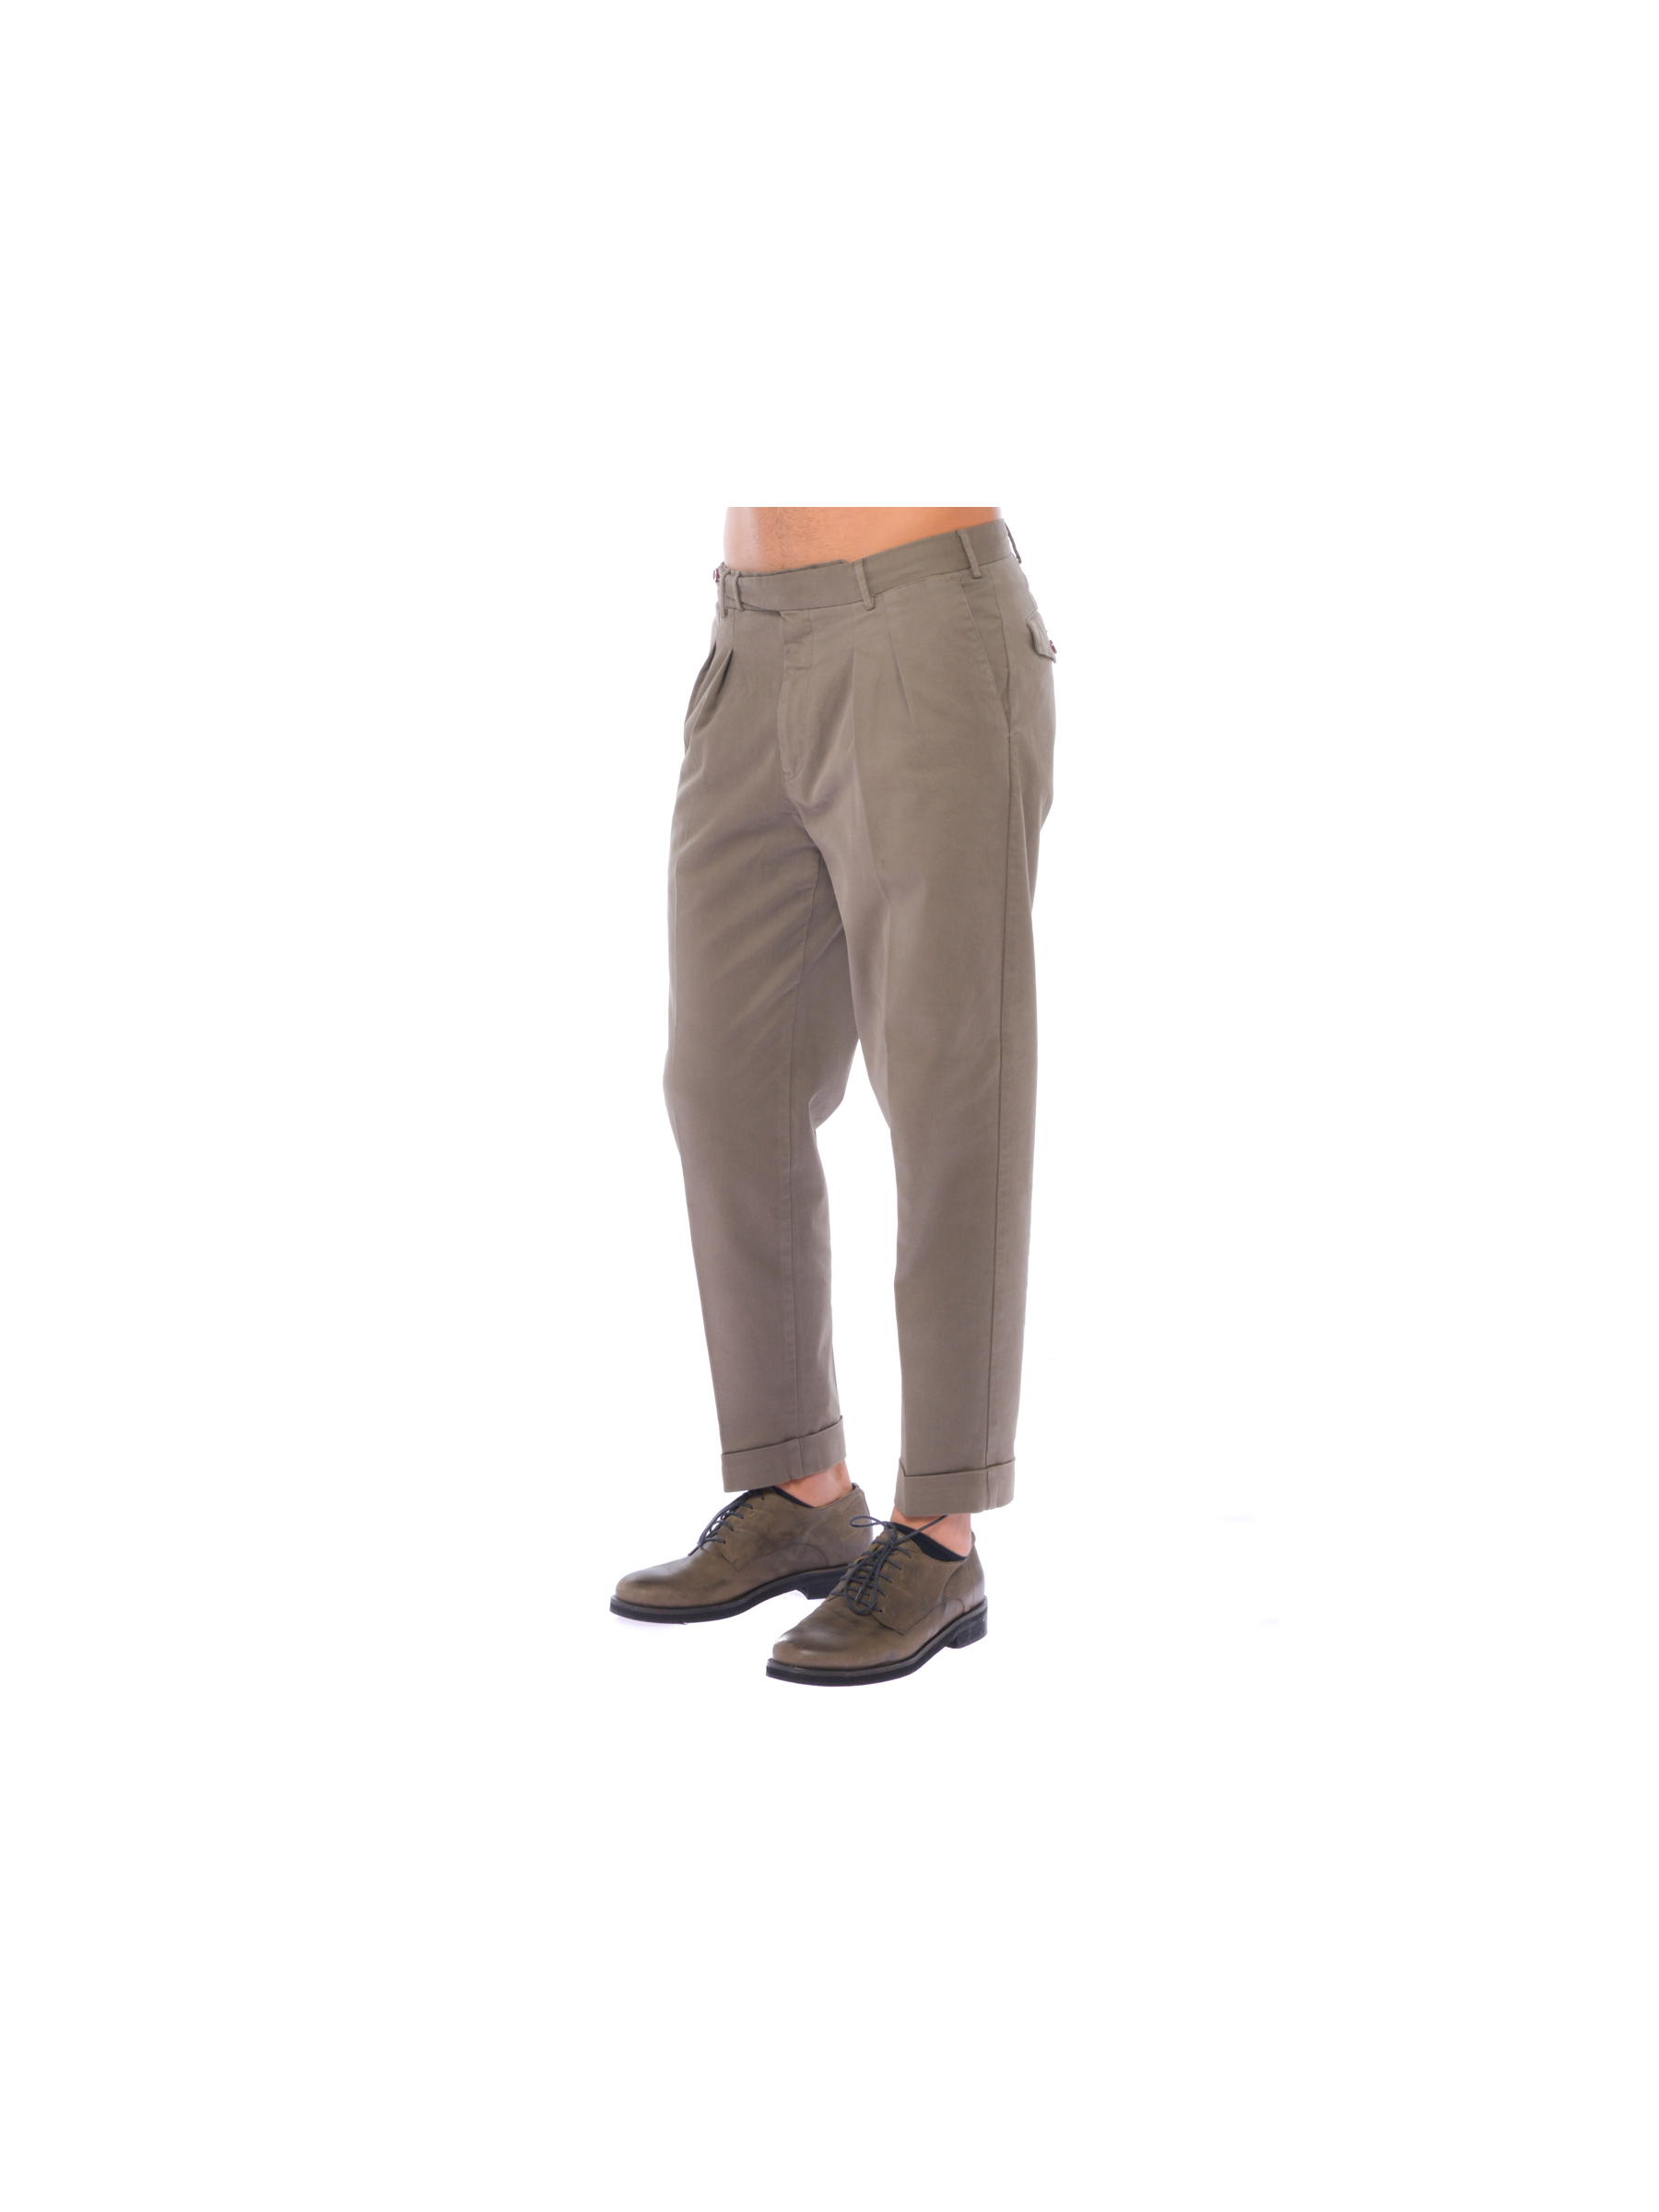 Pantalone uomo PT01 chino in cotone doppia pinces